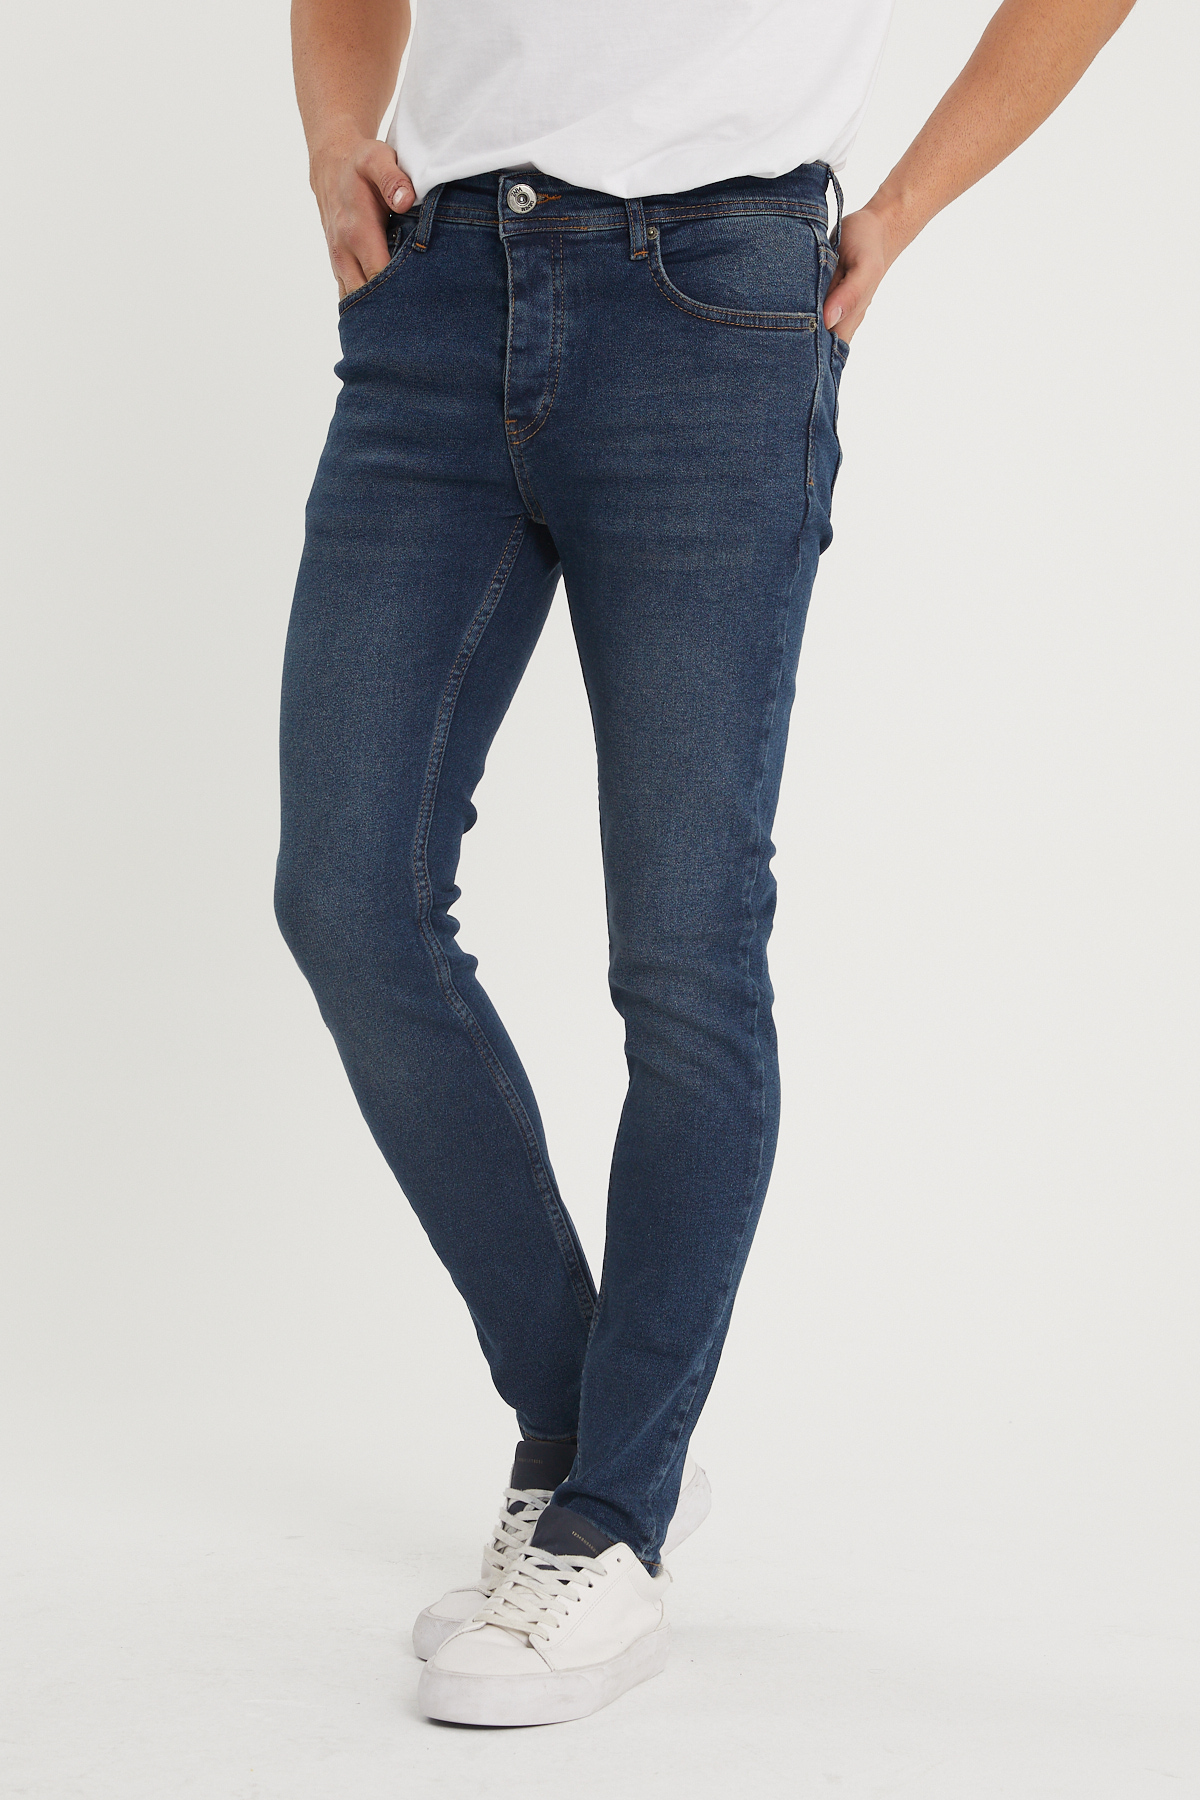 Yıkamalı Lacivert Slim Fit Jean Pantolon 1KXE5-44351-48 - 1